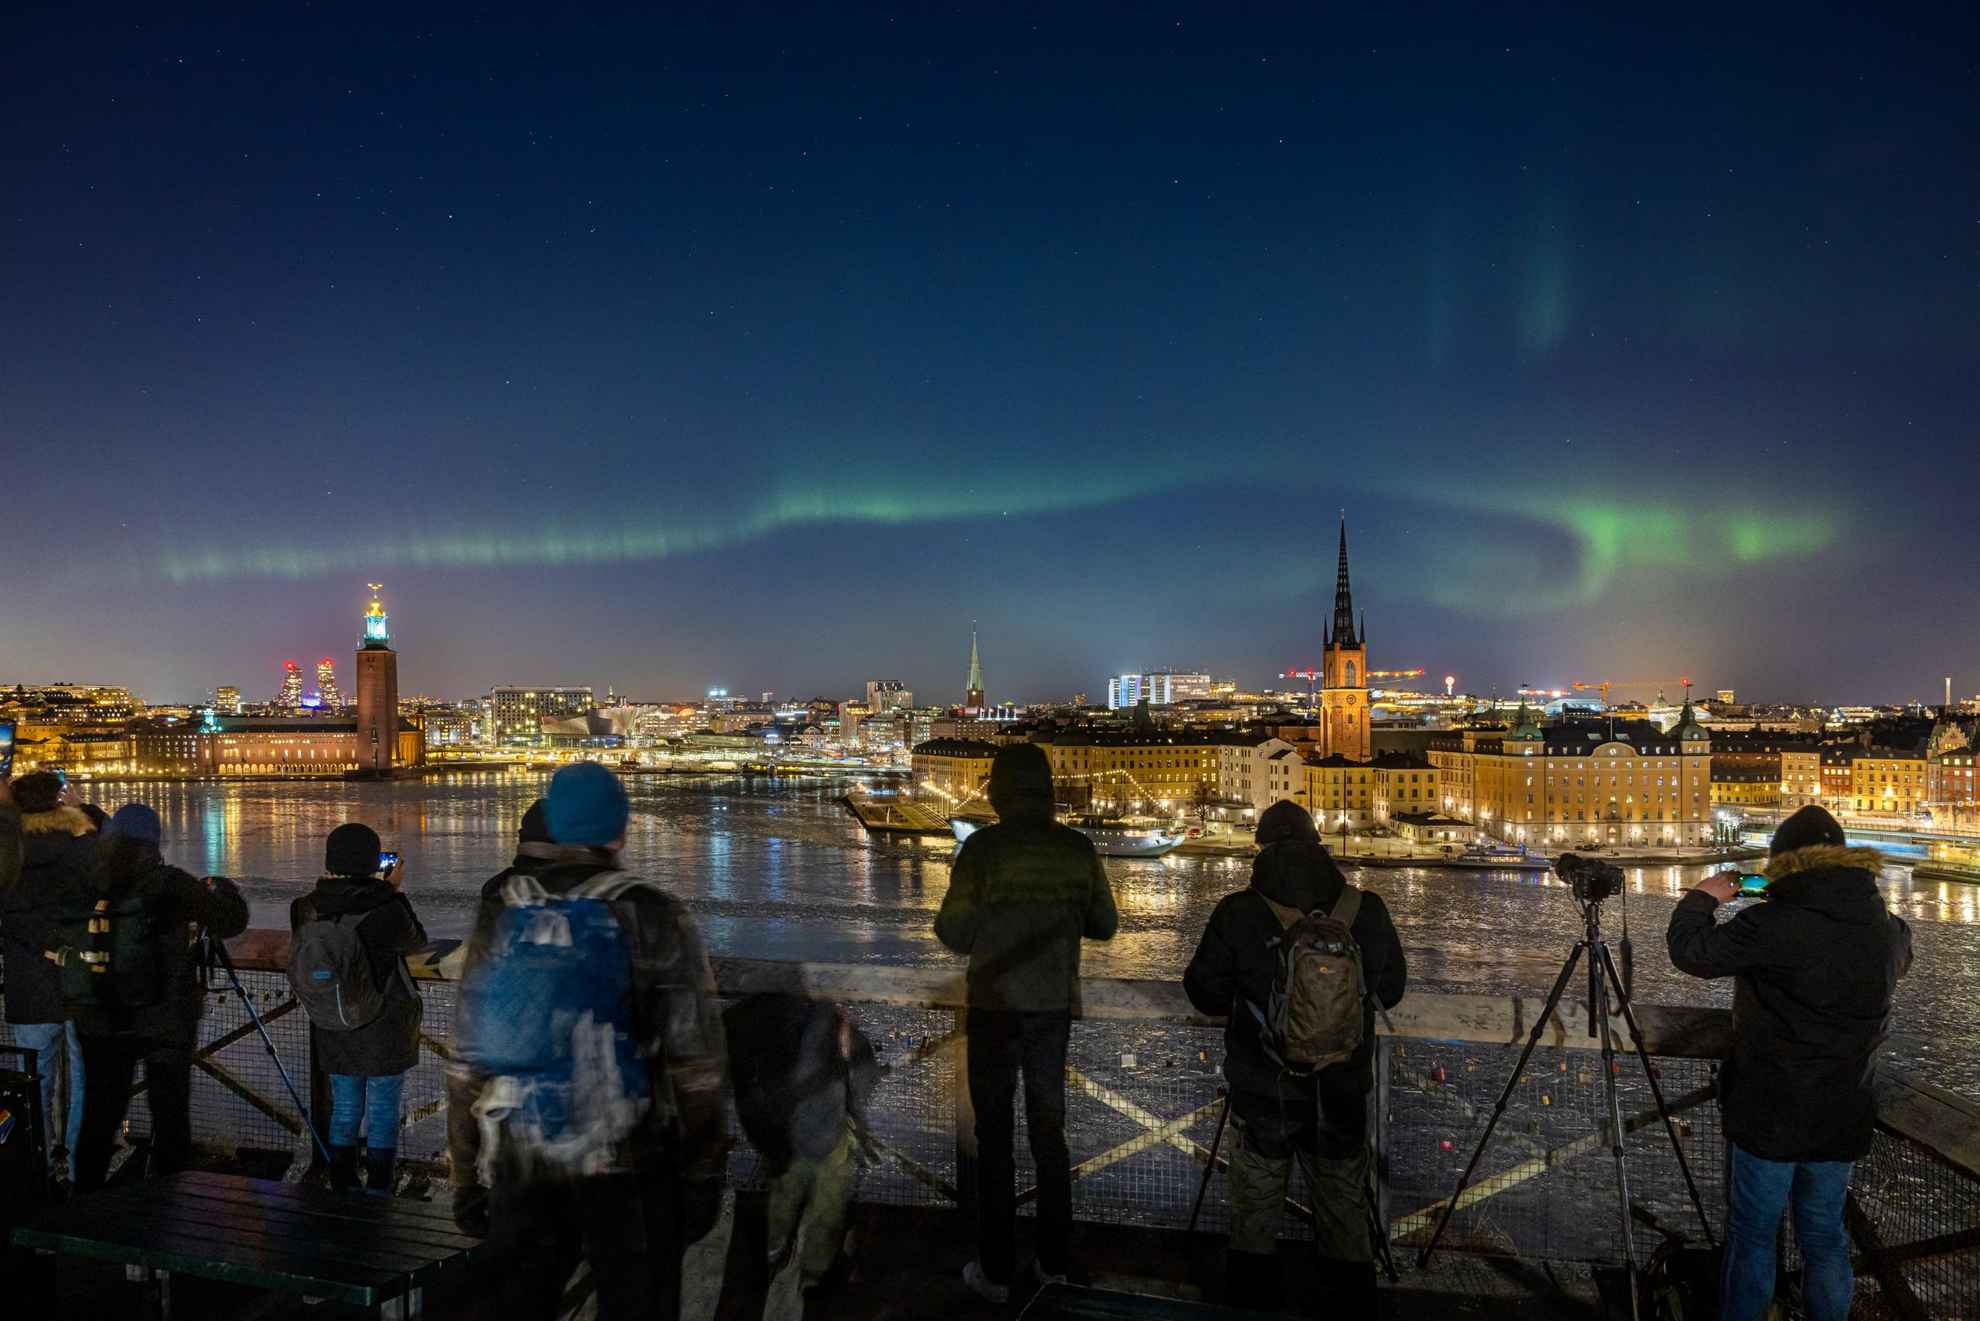 Une aurore boréale sur un paysage urbain, avec des photographes qui font la queue pour prendre une photo.